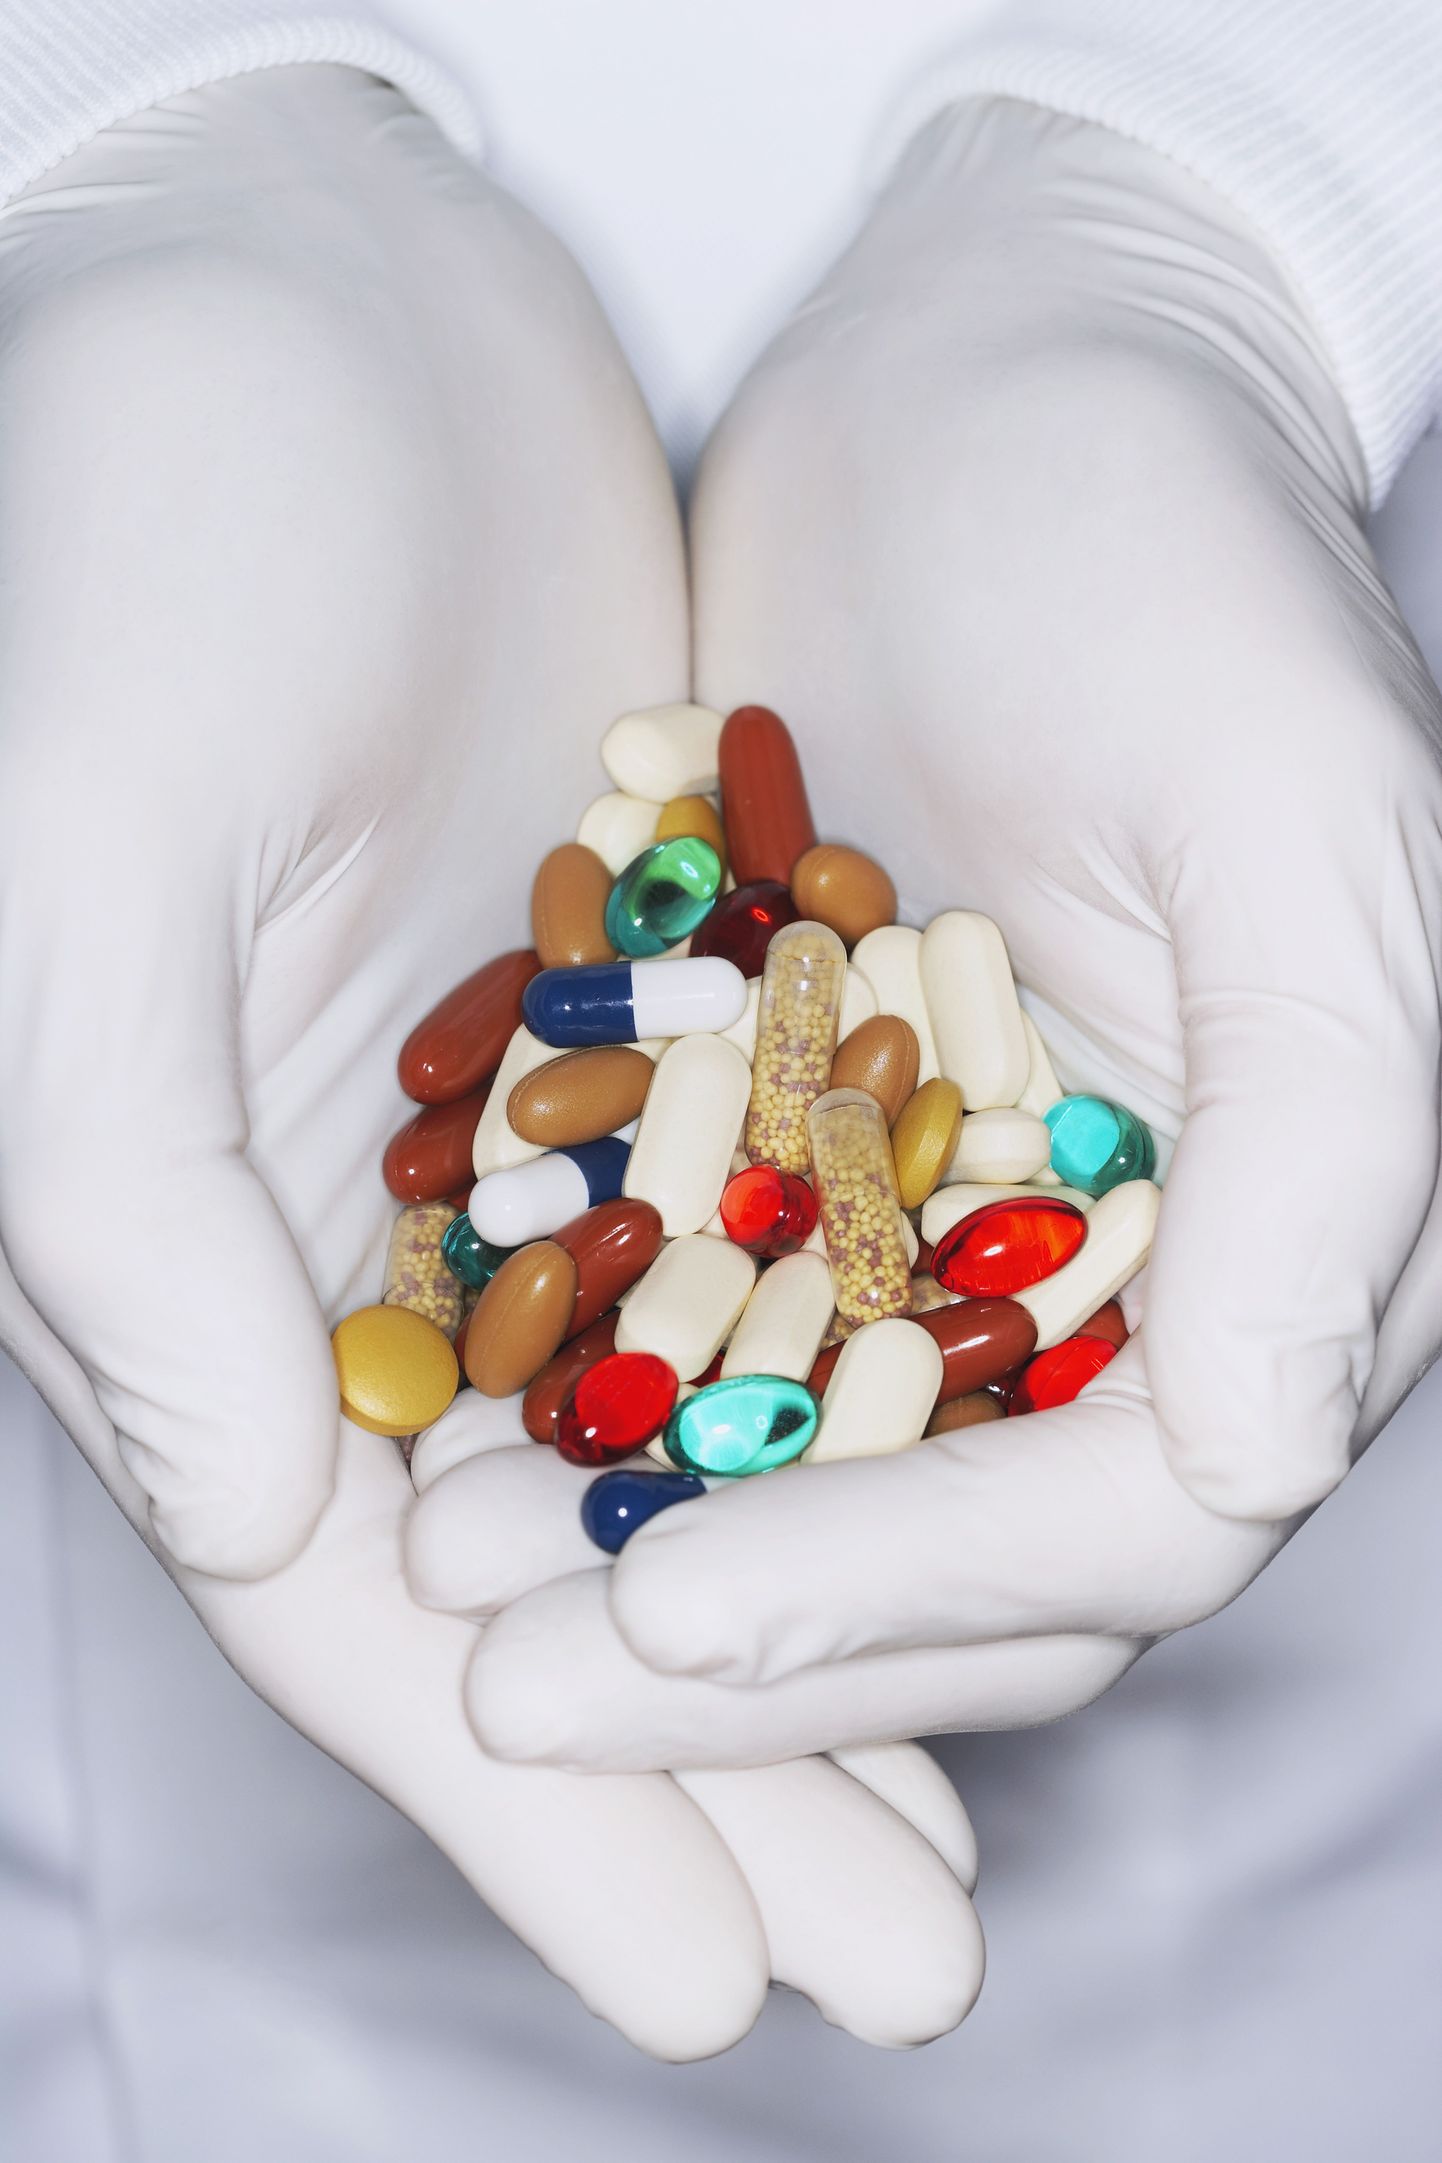 Ebaseaduslikult müüdavate ohtlike ravimitega kaasnevad riske saab vältida, ostes ravimeid vaid seaduslikult tegutsevast apteegist või internetiapteegist.